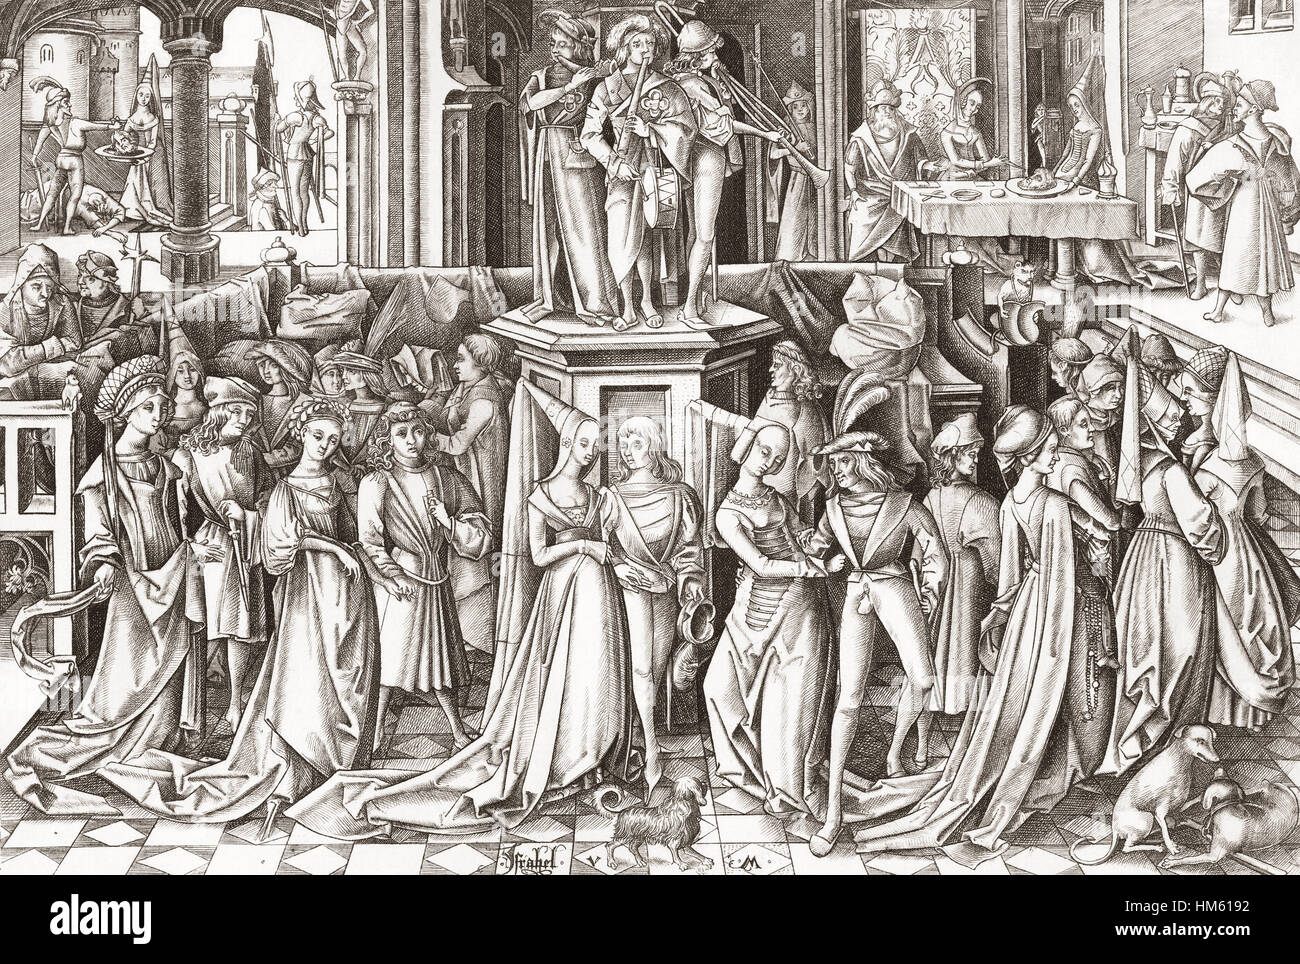 Fest der Salome, nach dem 15. oder 16. Jahrhundert drucken gravierte durch deutsche Grafiker und Goldschmied Israhel van Meckenem der jüngere, c. 1445-1503. Stockfoto